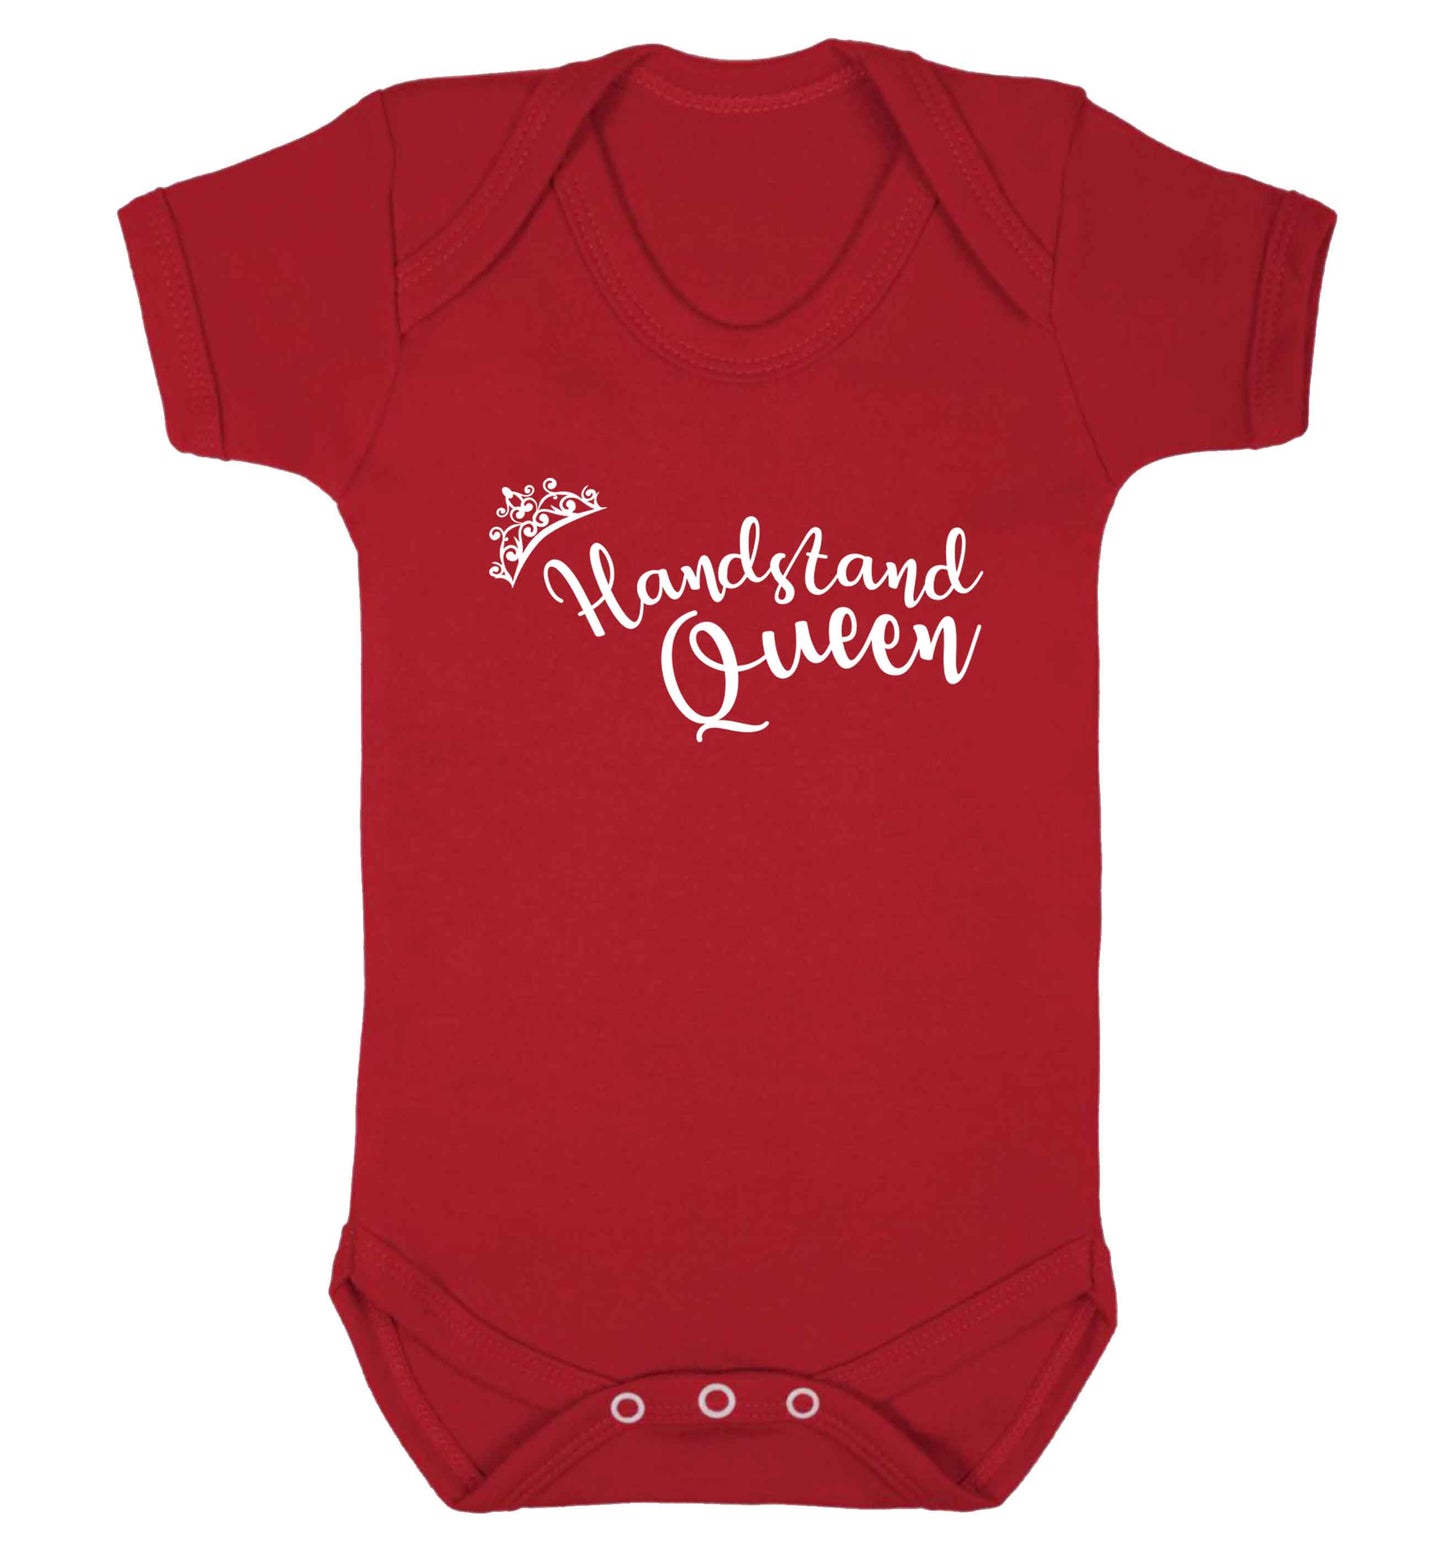 Handstand Queen Baby Vest red 18-24 months